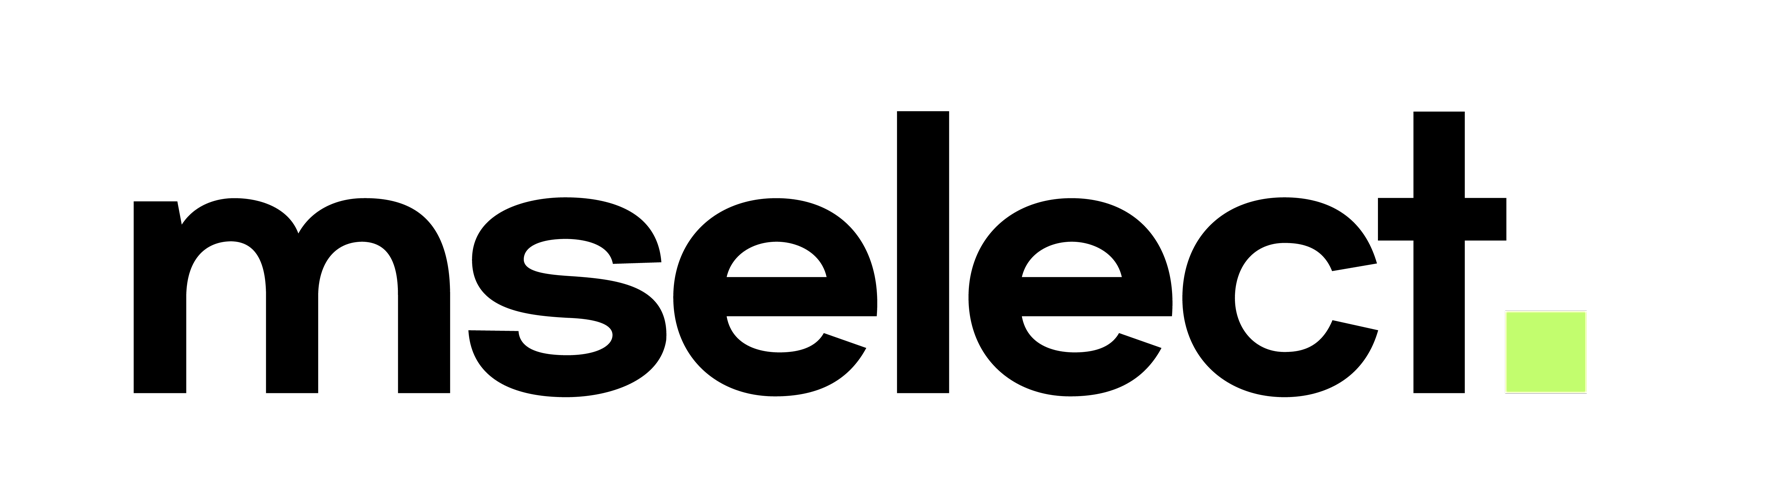 mselect logo